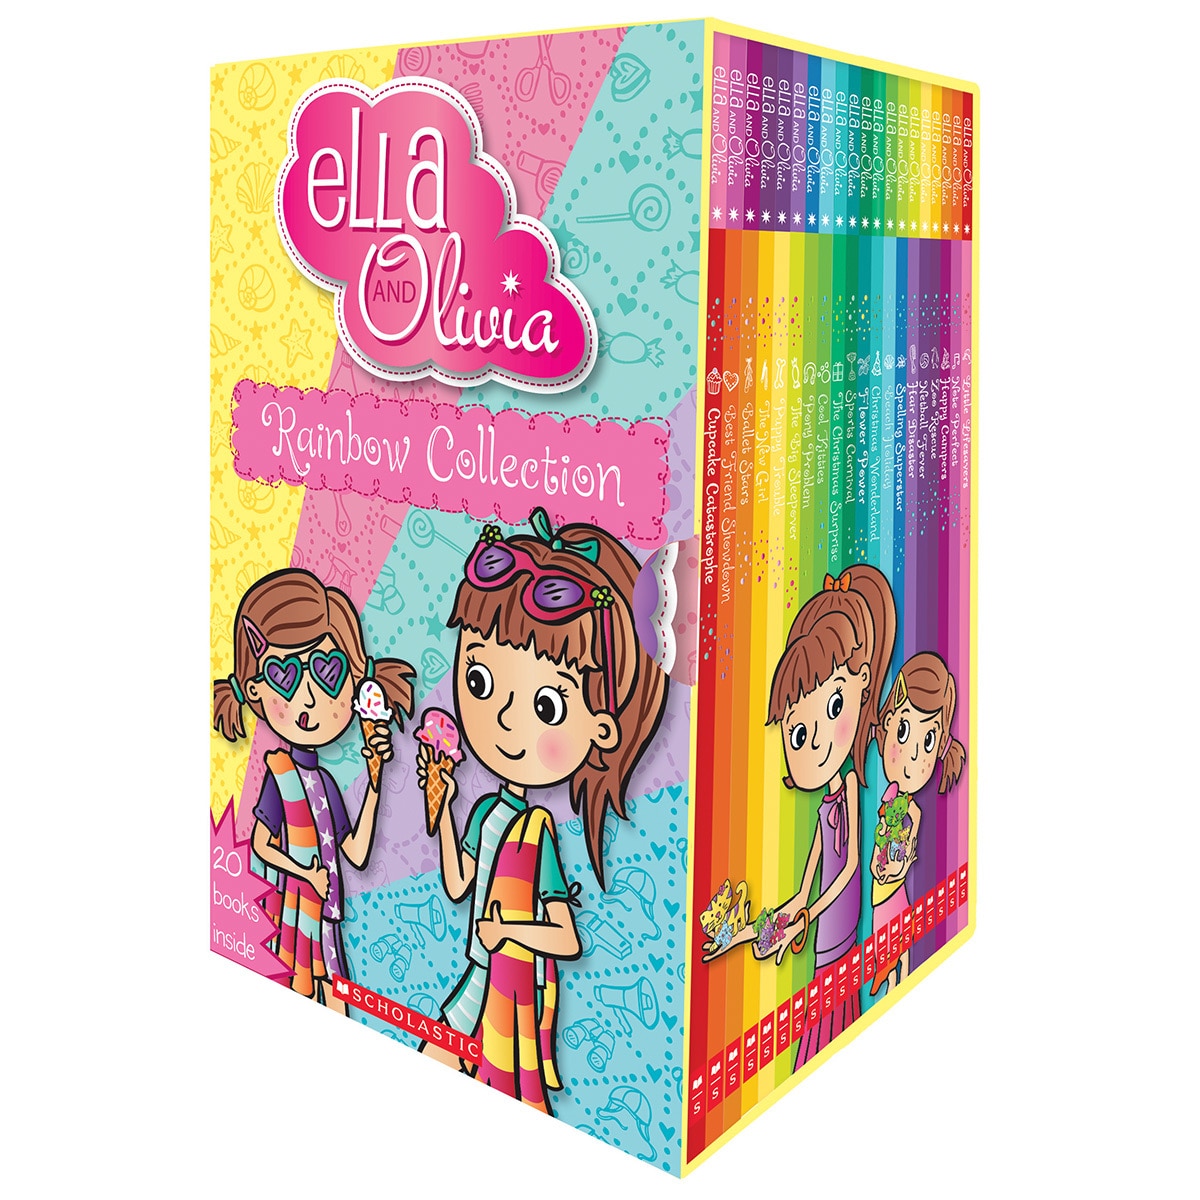 Ella Olivia Rainbow Box set